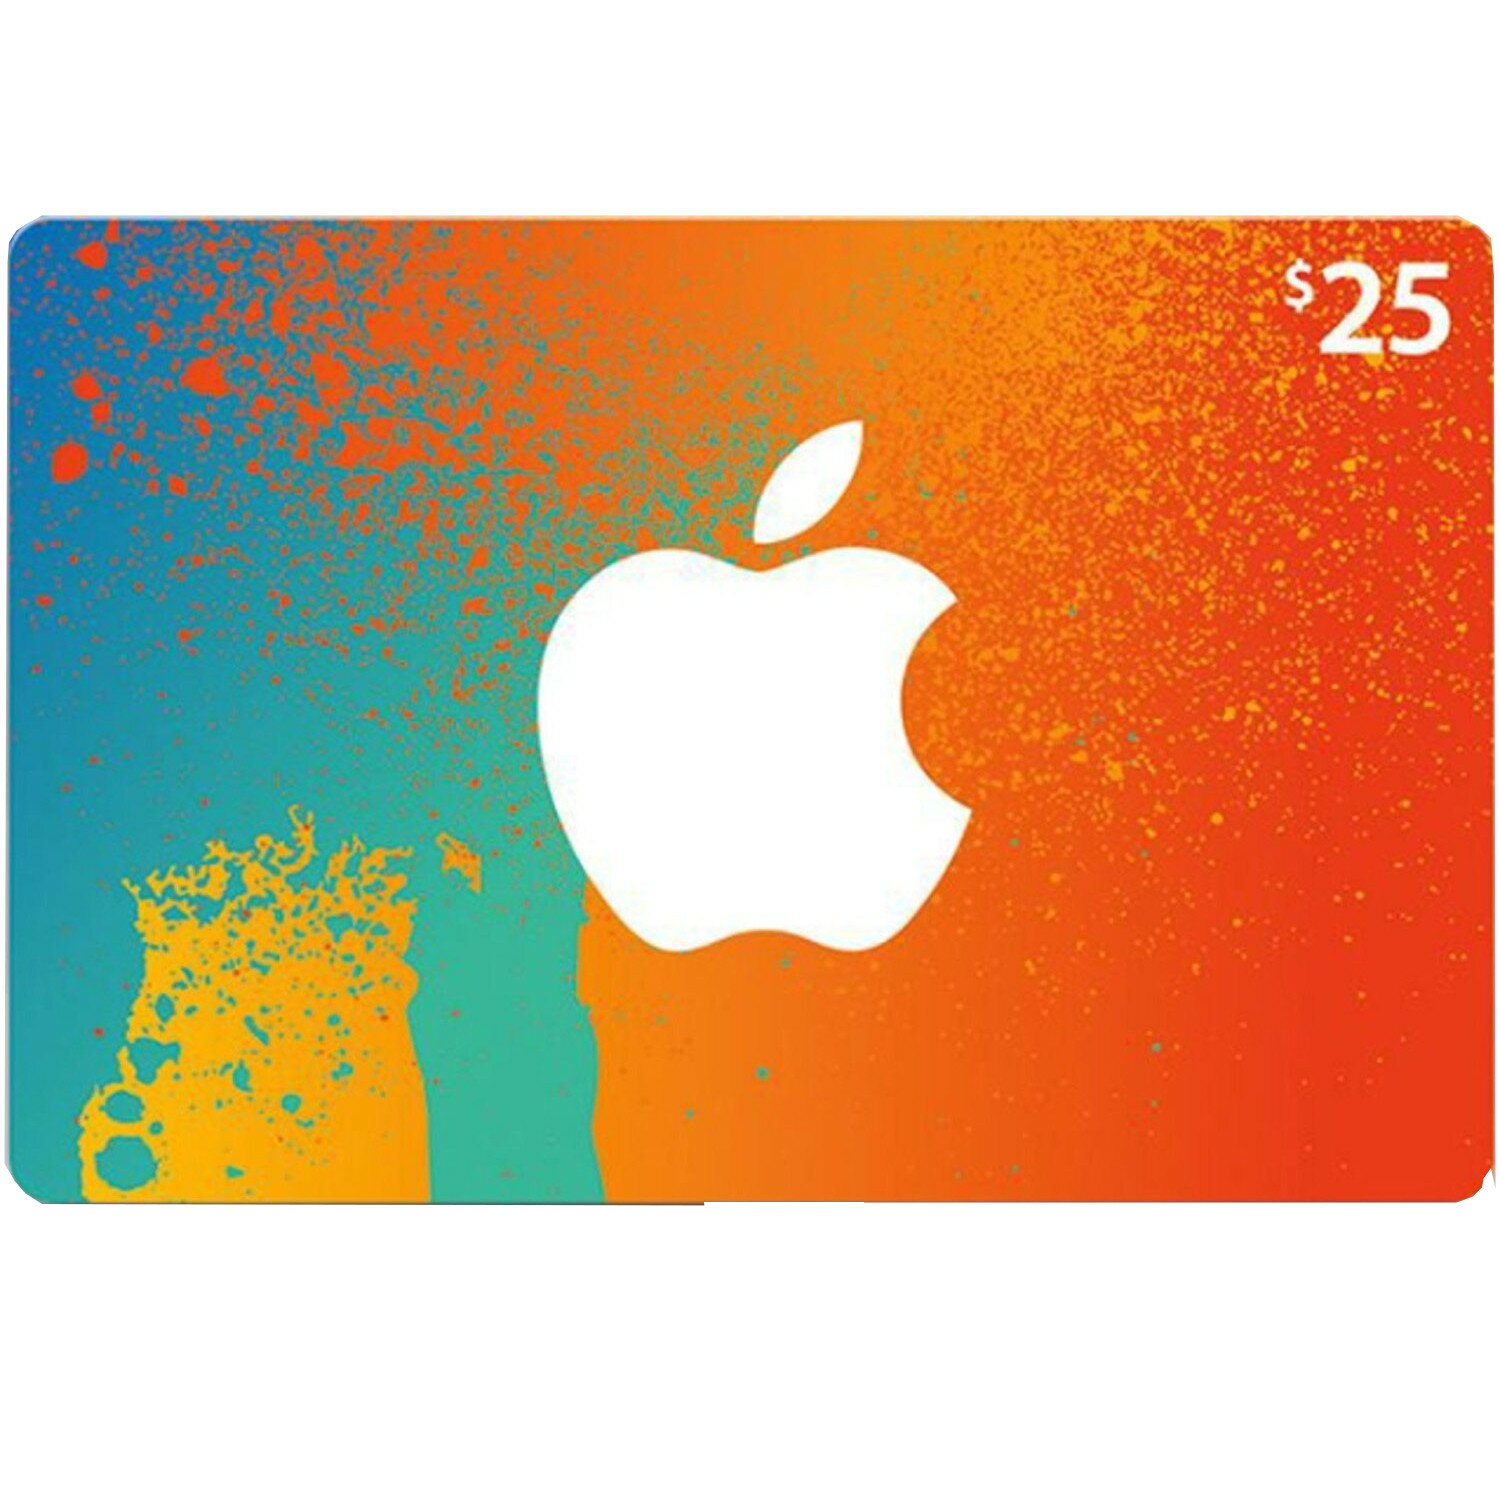 apple itunes gift card deals